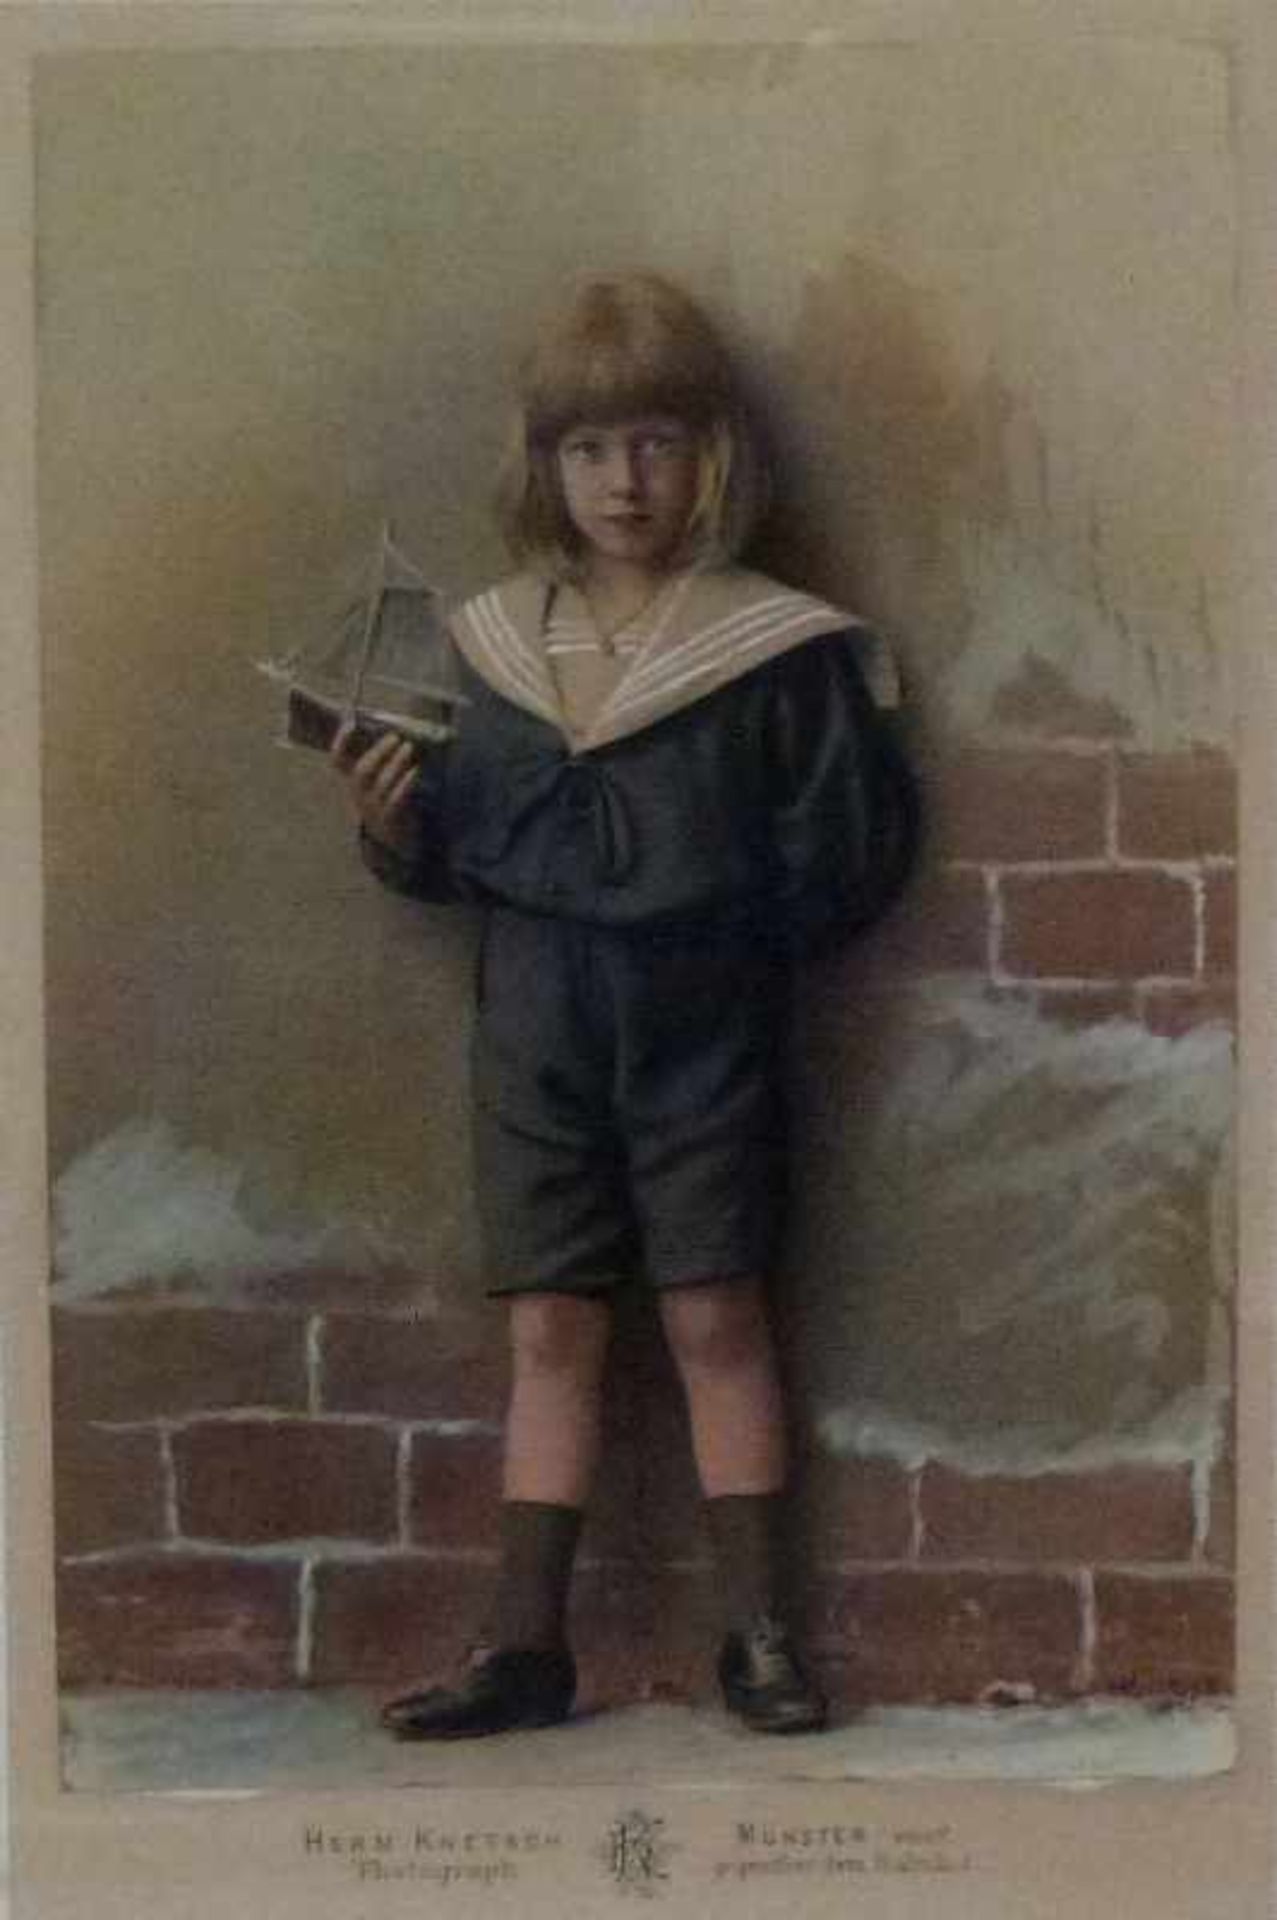 Kinderportrait, H. Knetsch, Münster, 1898 coloriertes Foto, vor Mauer stehender Knabe im